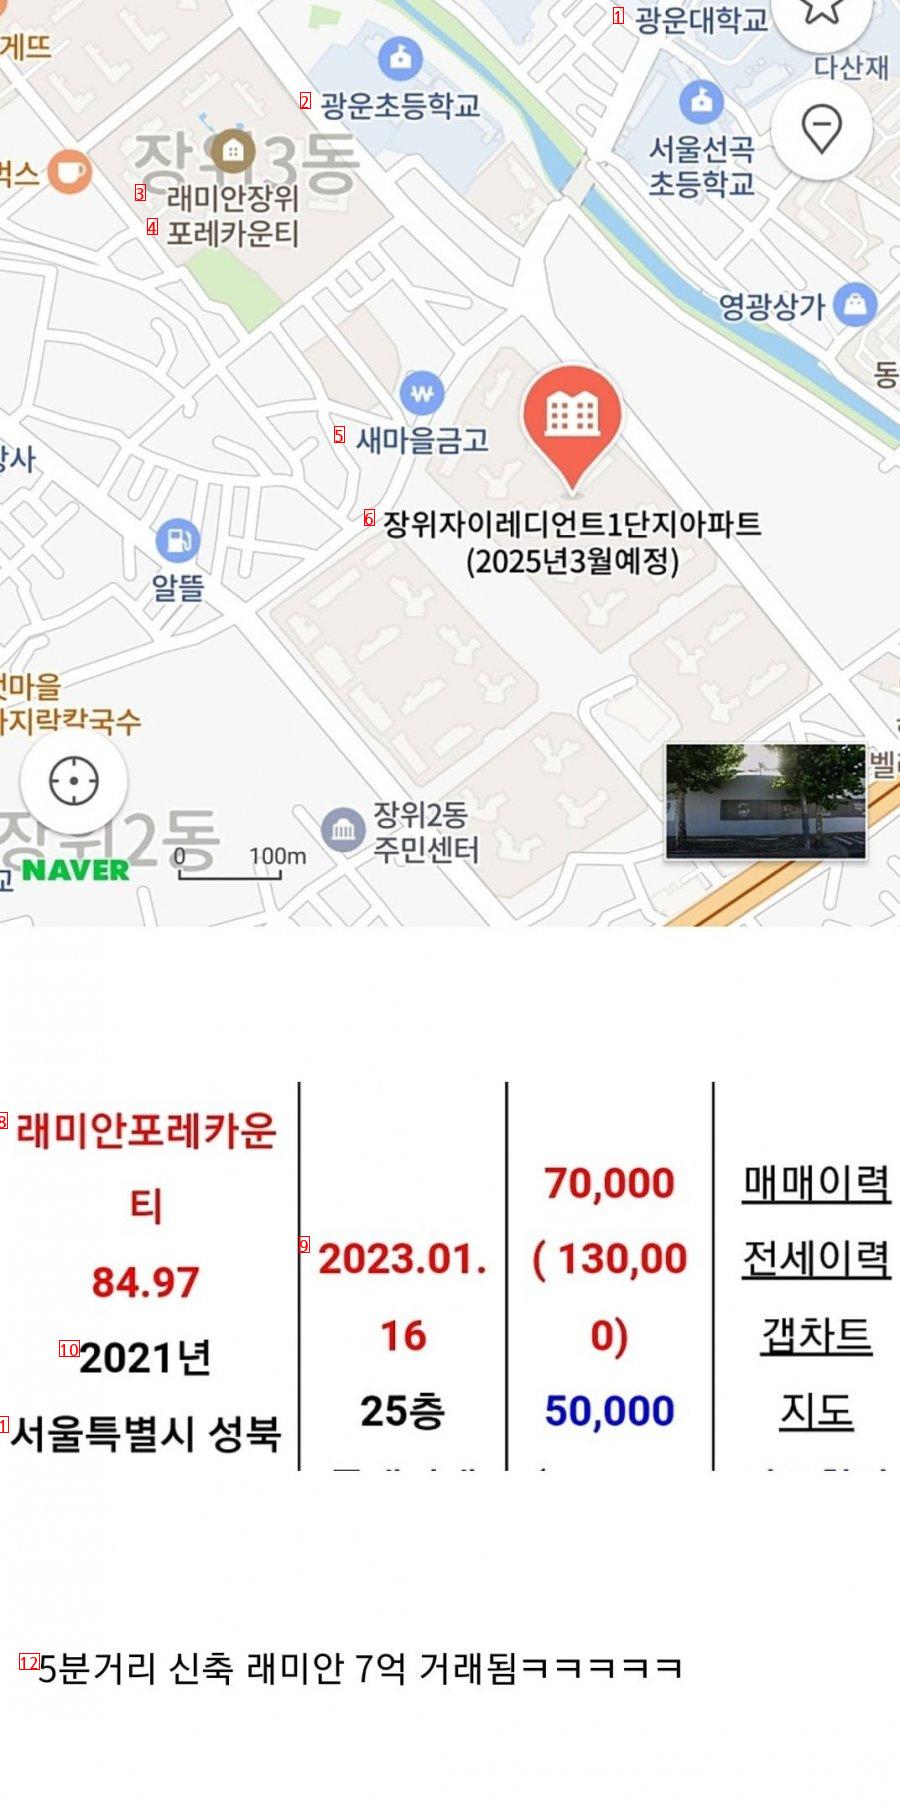 서울 하급지 국평 7억대 ㅎㄷㄷㄷ